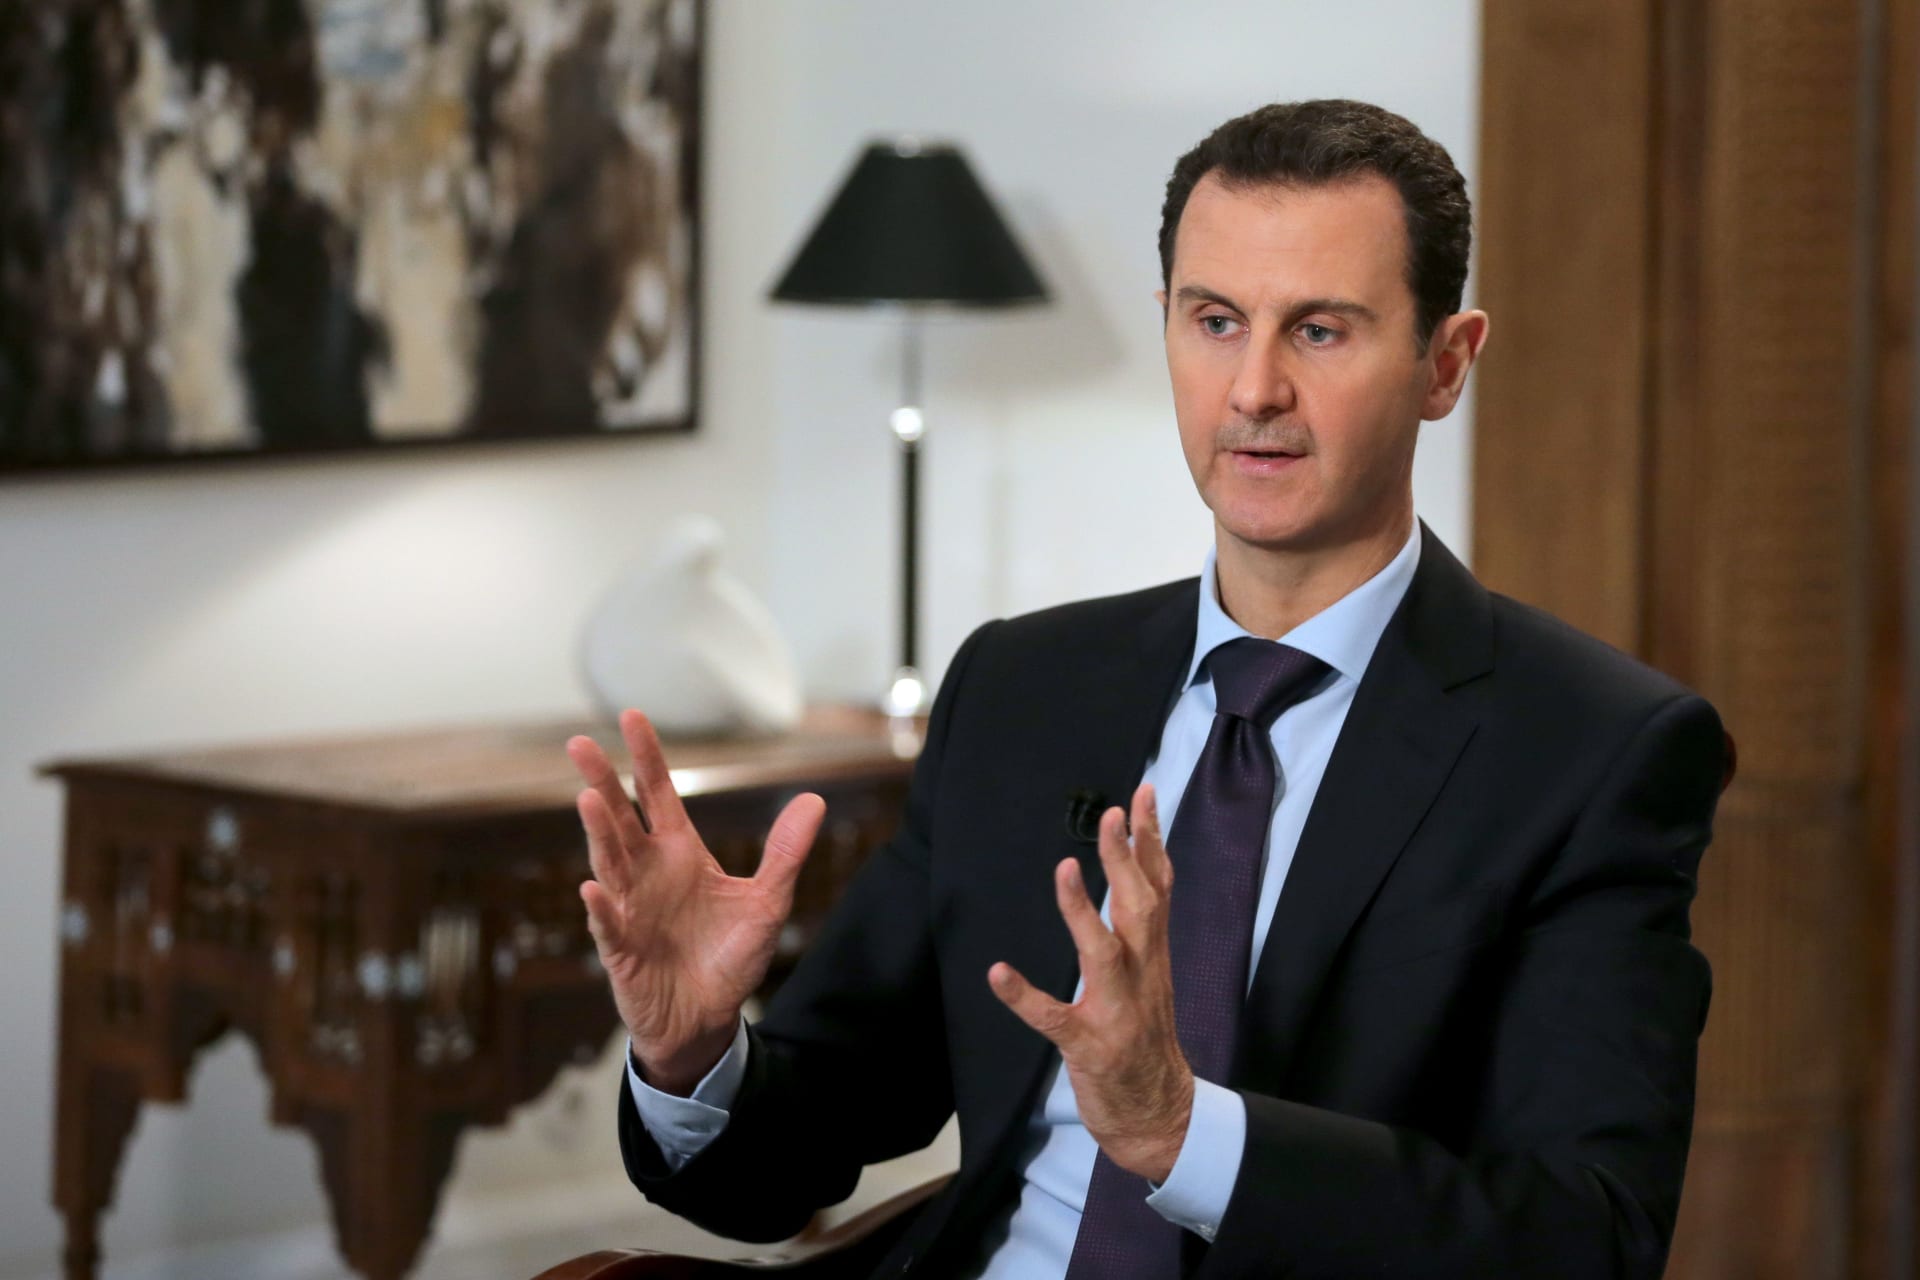 الأسد يهاجم الوهابية ويصف الإخوان بـ"الشياطين".. ويعطي دروسا في "الدين"  